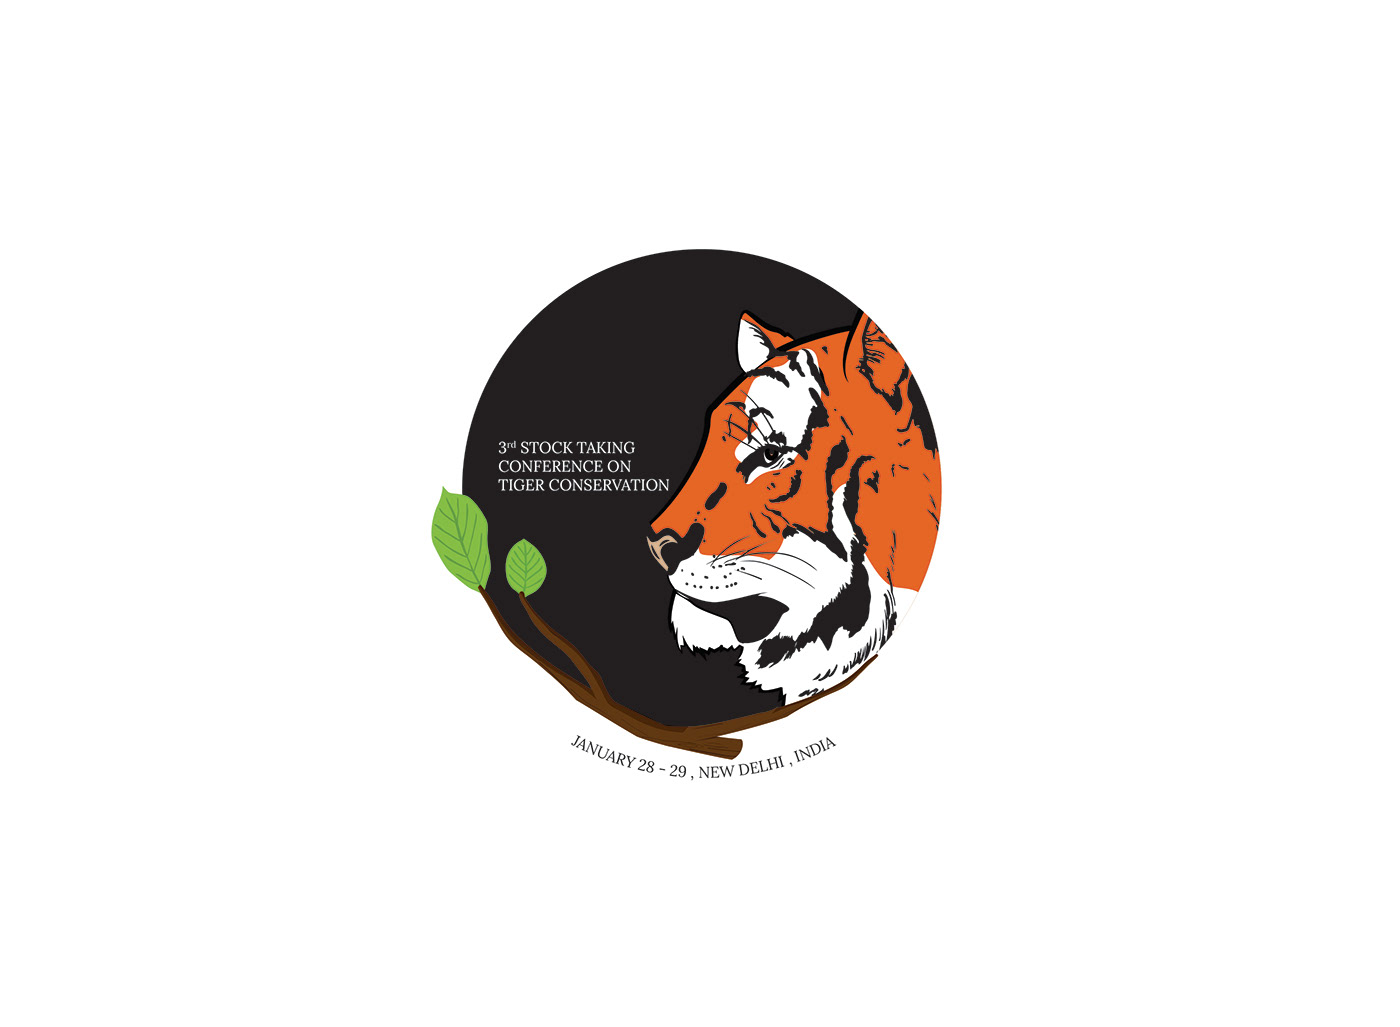 tiger conservation conference WWF global tiger forum wildlife logo